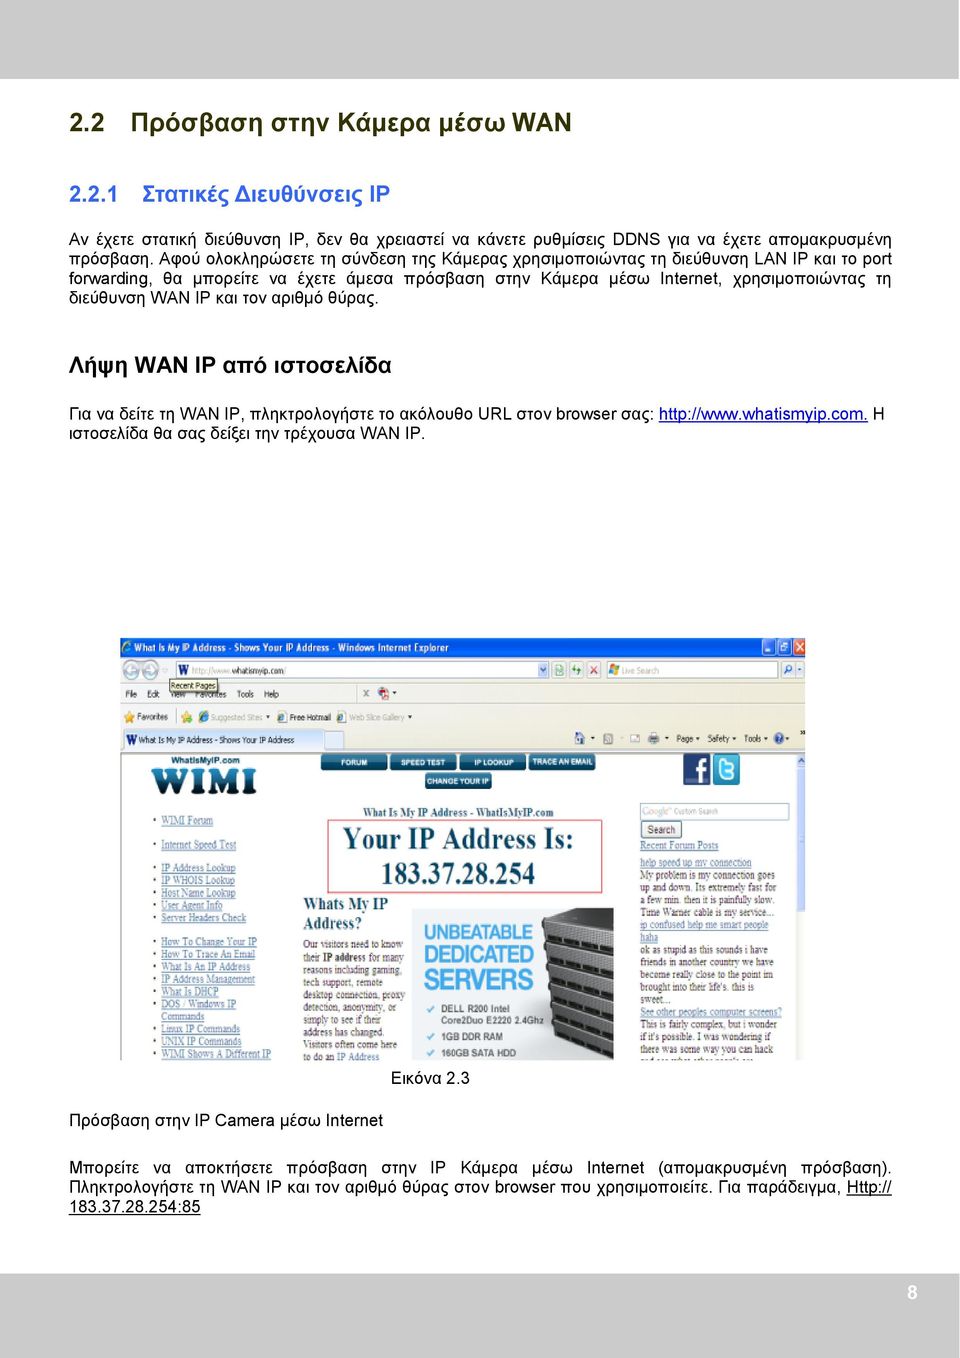 και τον αριθμό θύρας. Λήψη WAN IP από ιστοσελίδα Για να δείτε τη WAN IP, πληκτρολογήστε το ακόλουθο URL στον browser σας: http://www.whatismyip.com. Η ιστοσελίδα θα σας δείξει την τρέχουσα WAN IP.